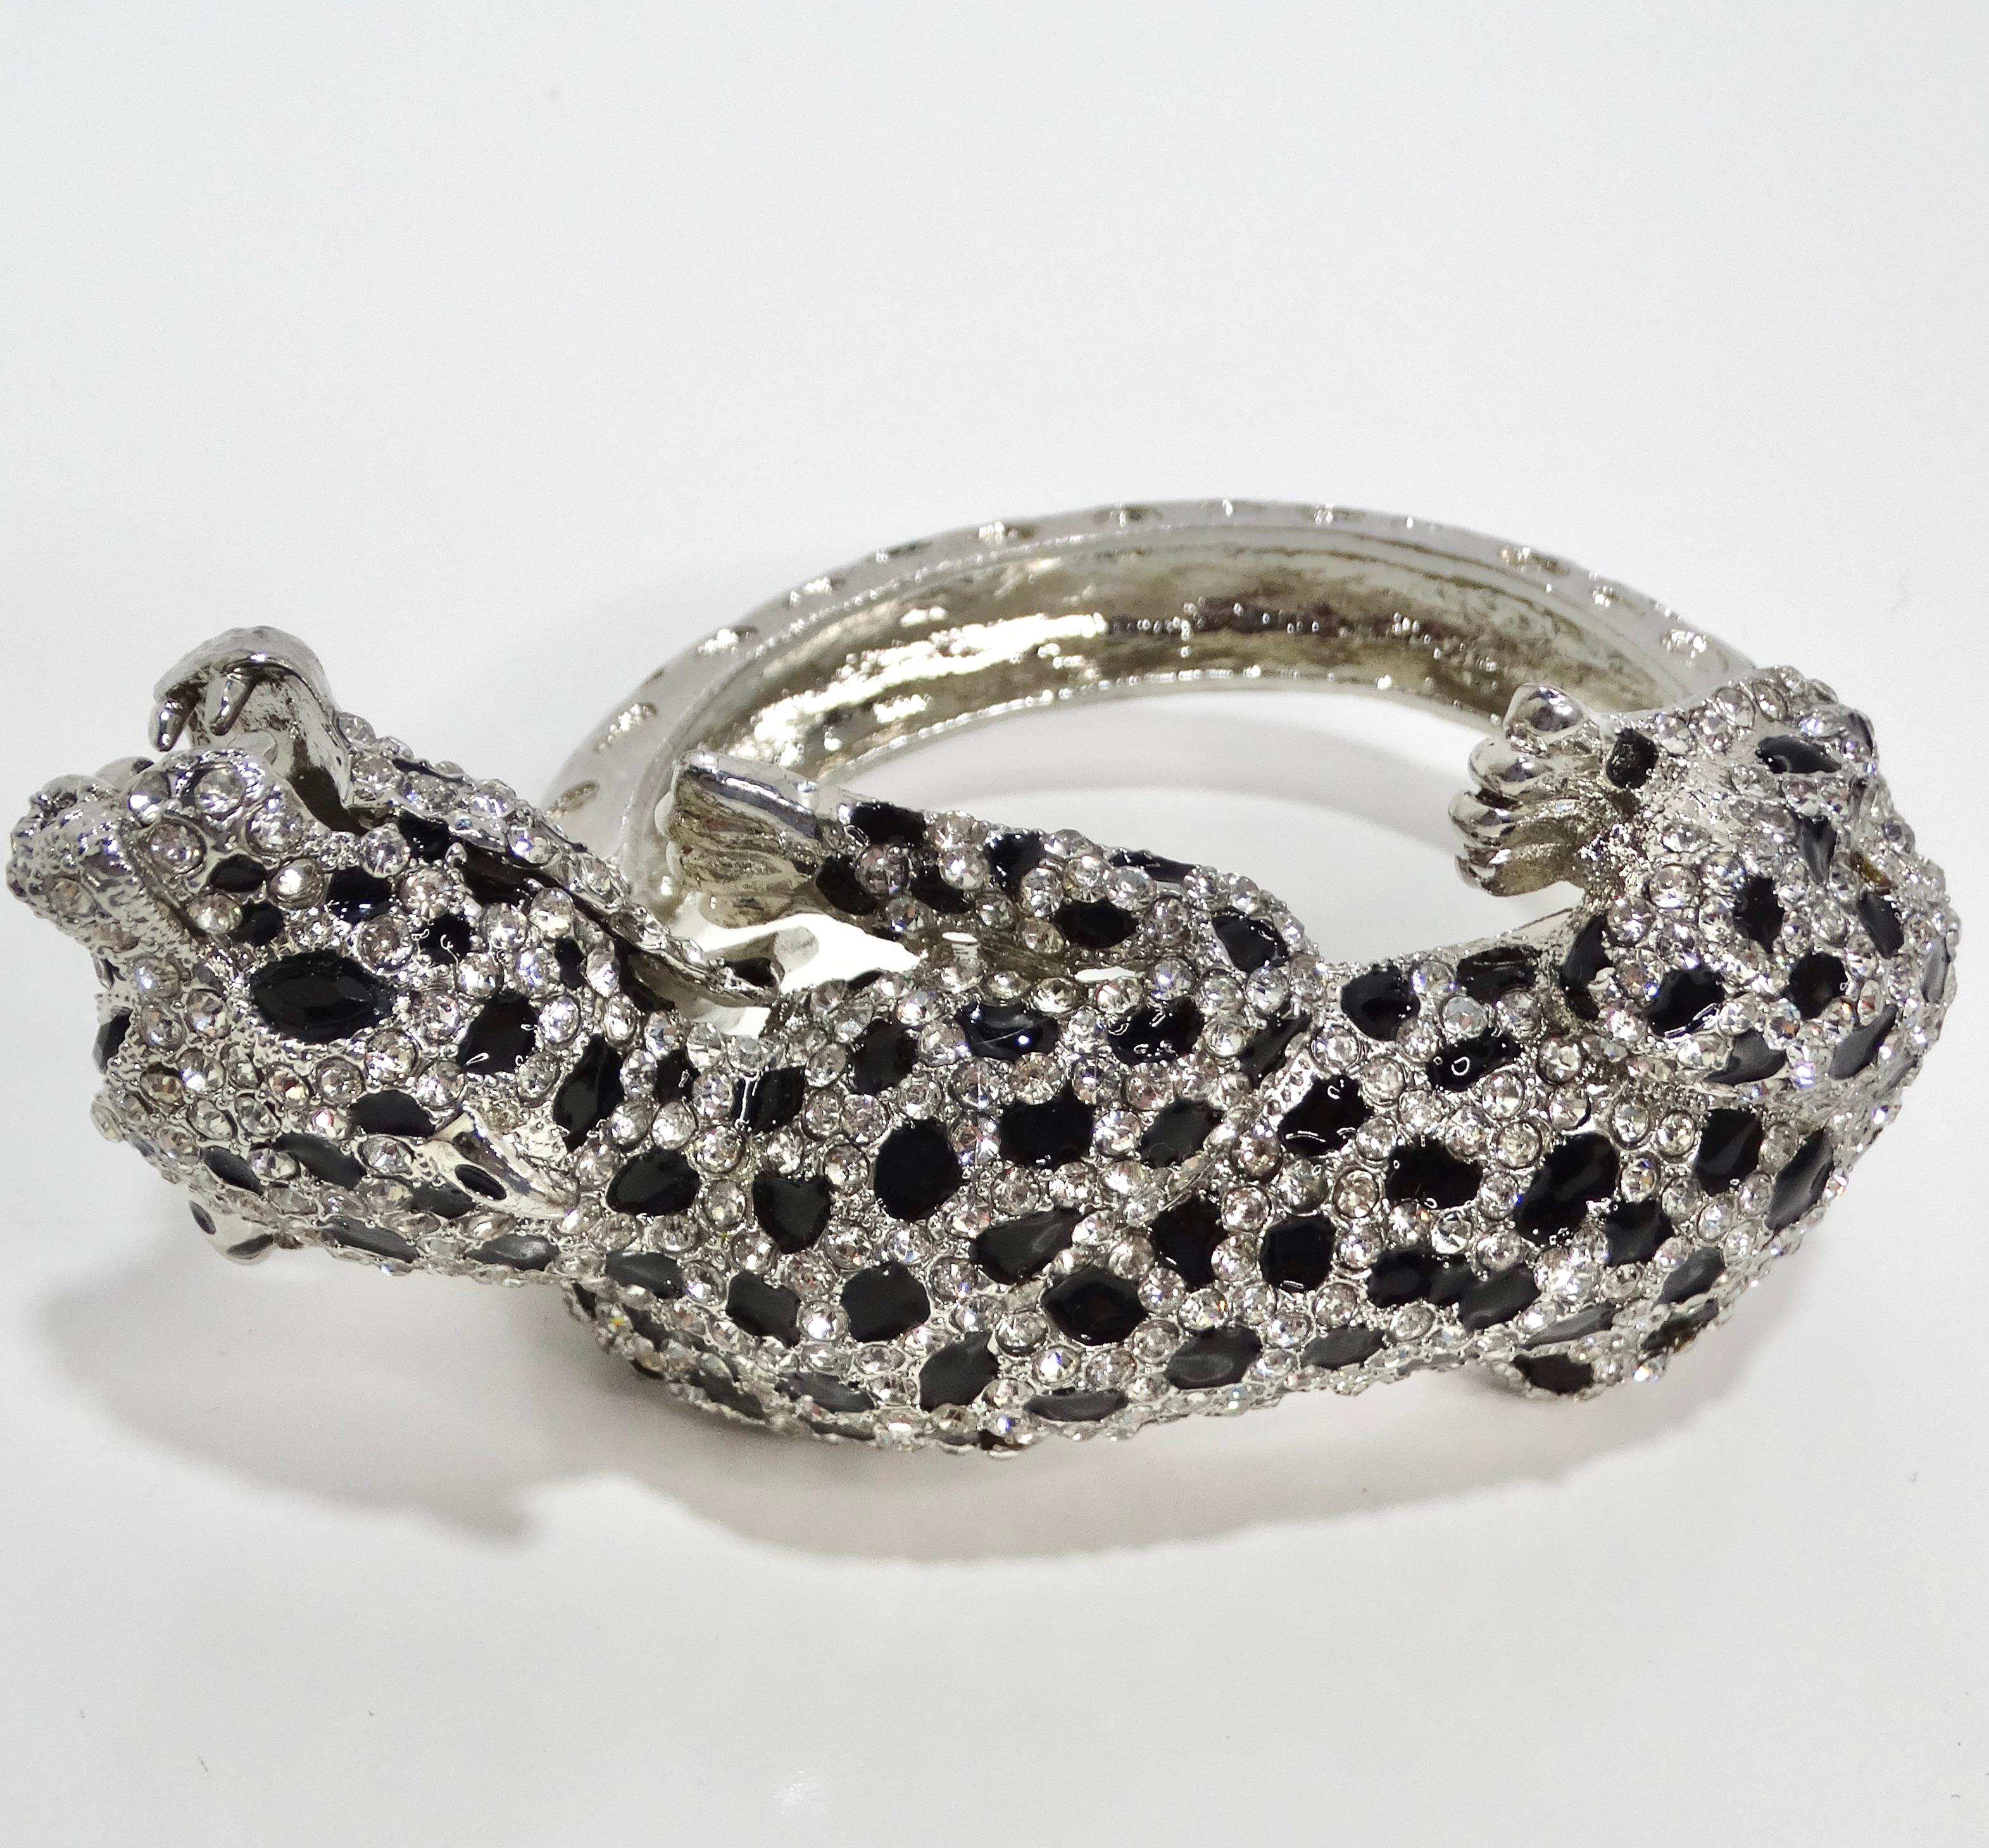 Voici le bracelet manchette Panthère en strass inspiré de Cartier des années 1990, un accessoire éblouissant et glamour qui respire l'élégance et la sophistication. Confectionné en métal argenté, ce bracelet manchette présente un large motif de